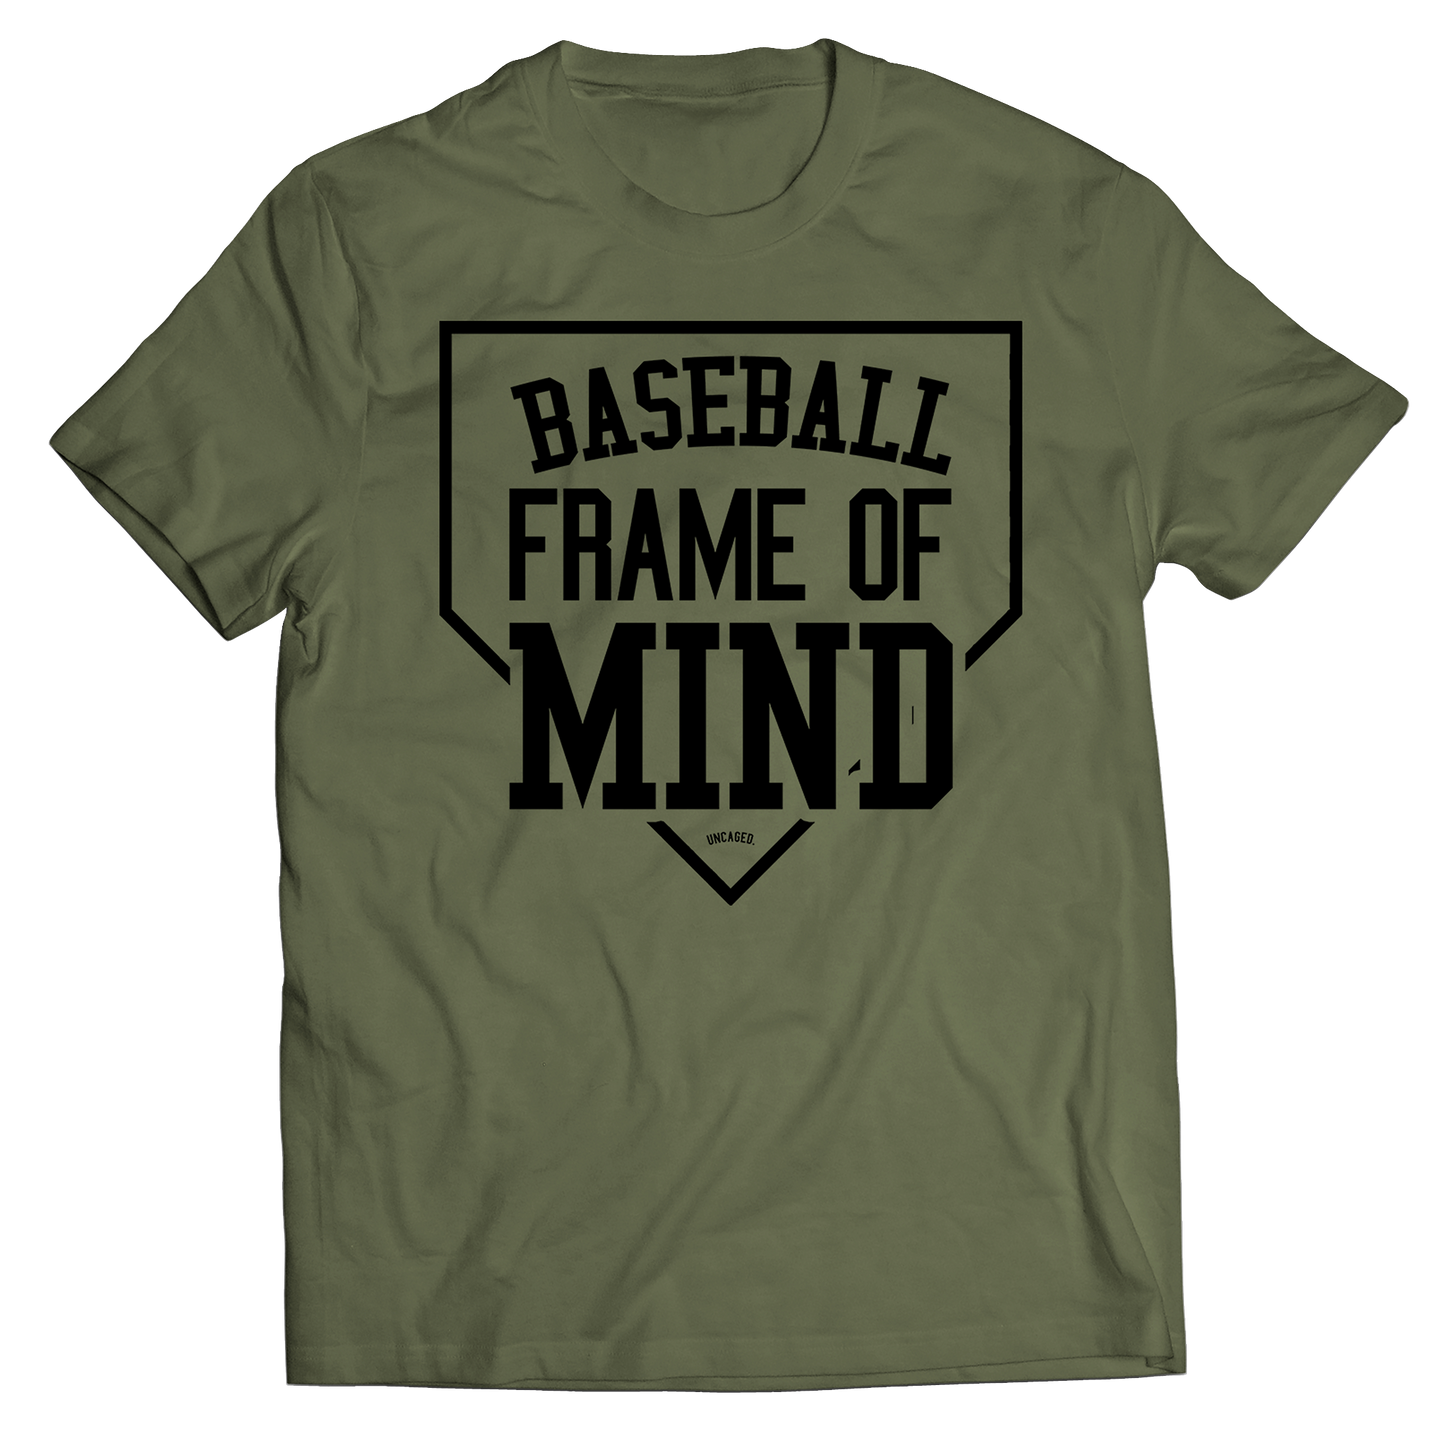 Baseball Frame of Mind T-Shirt - Olive